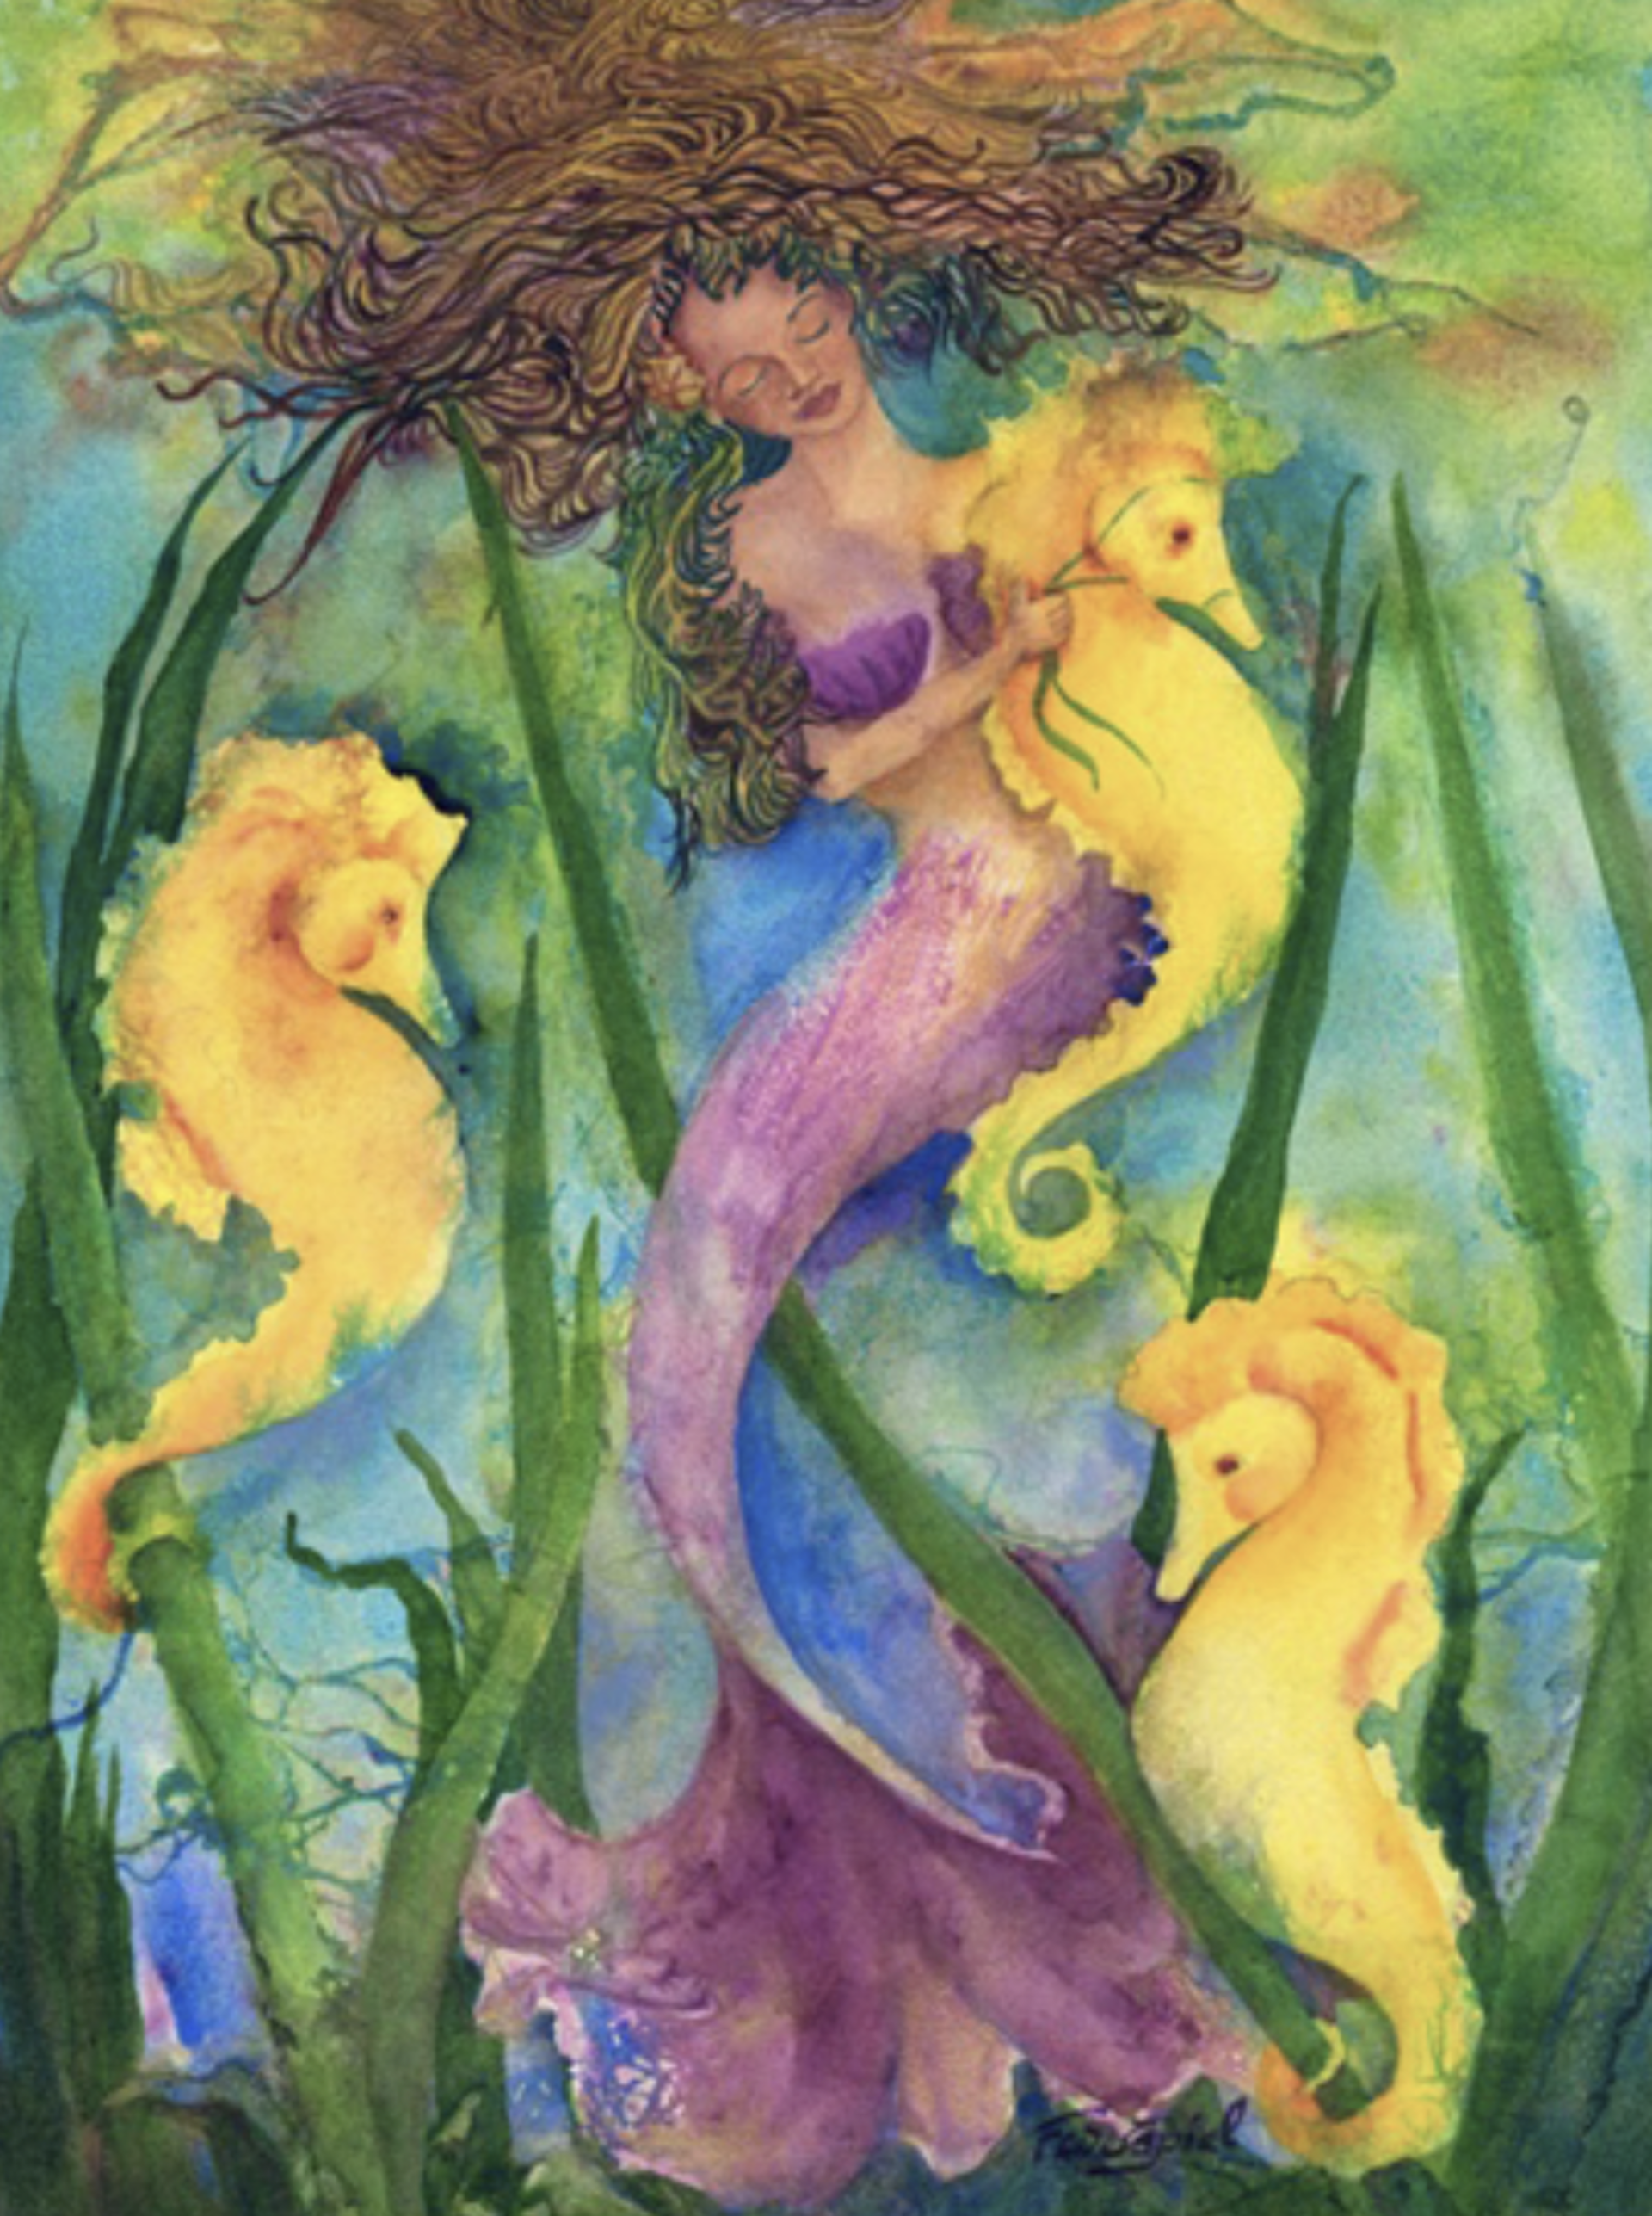 Release Your Inner Mermaid by Patrice Ann Federspiel